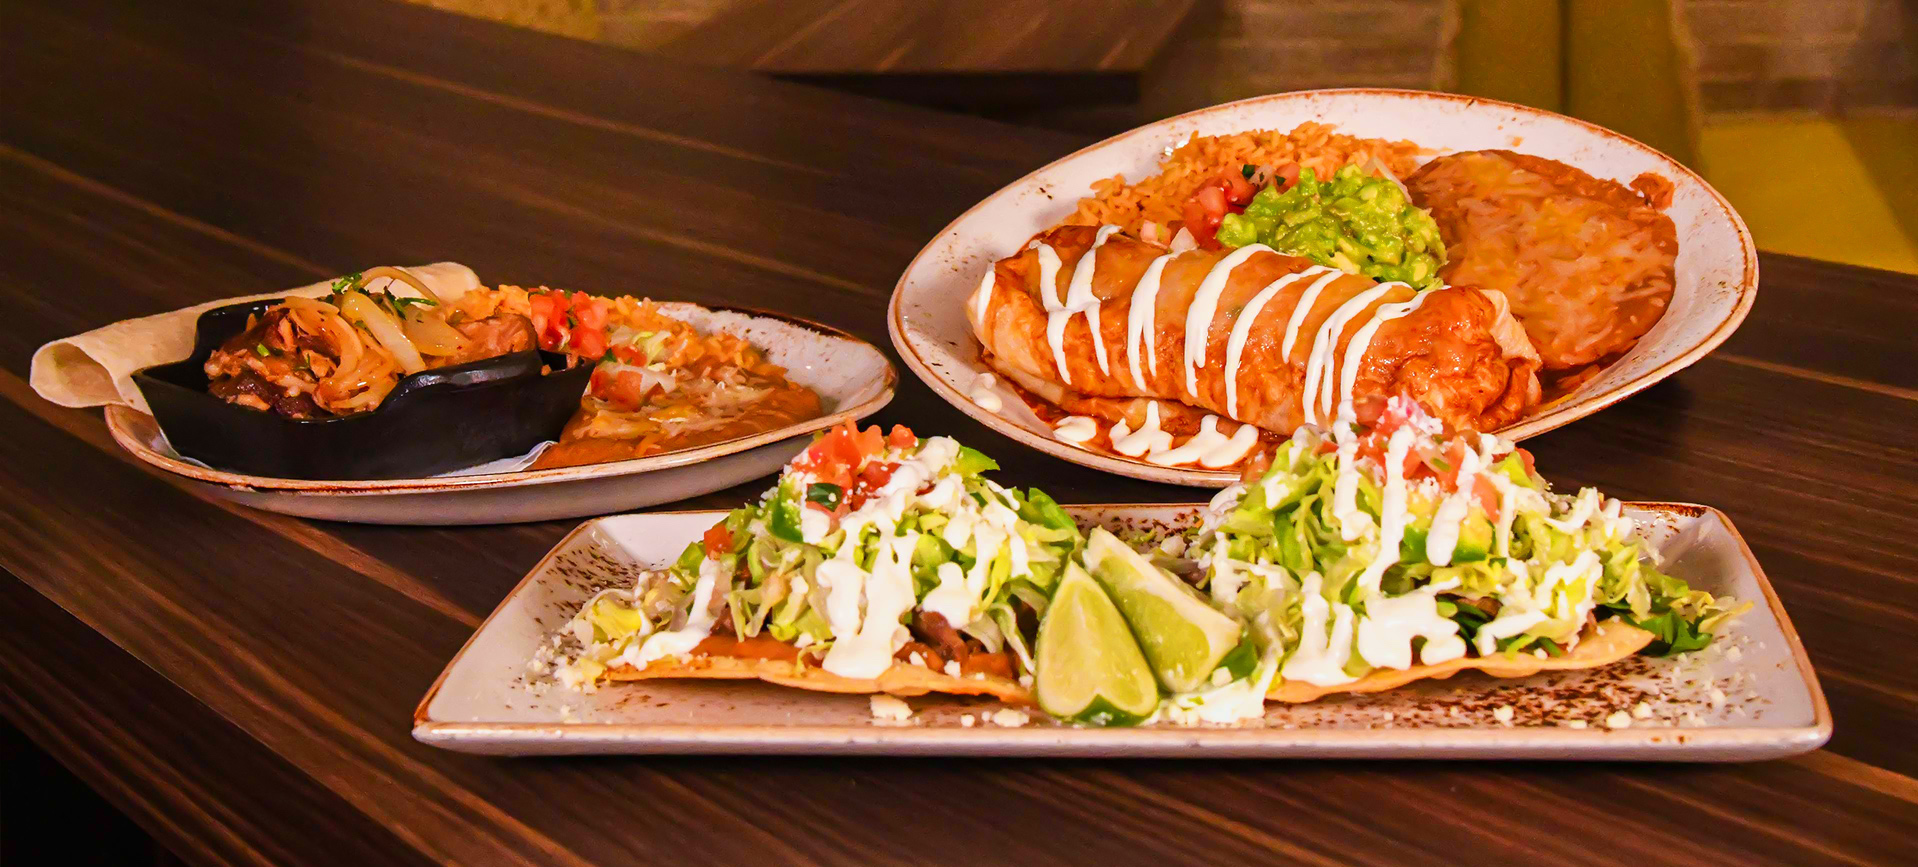 Tostada-Burrito-Fajitas-at-Uno-Mas-Street-Tacos-and-Spirits_Color-full_q085_1920x1080-d7d9ca5d